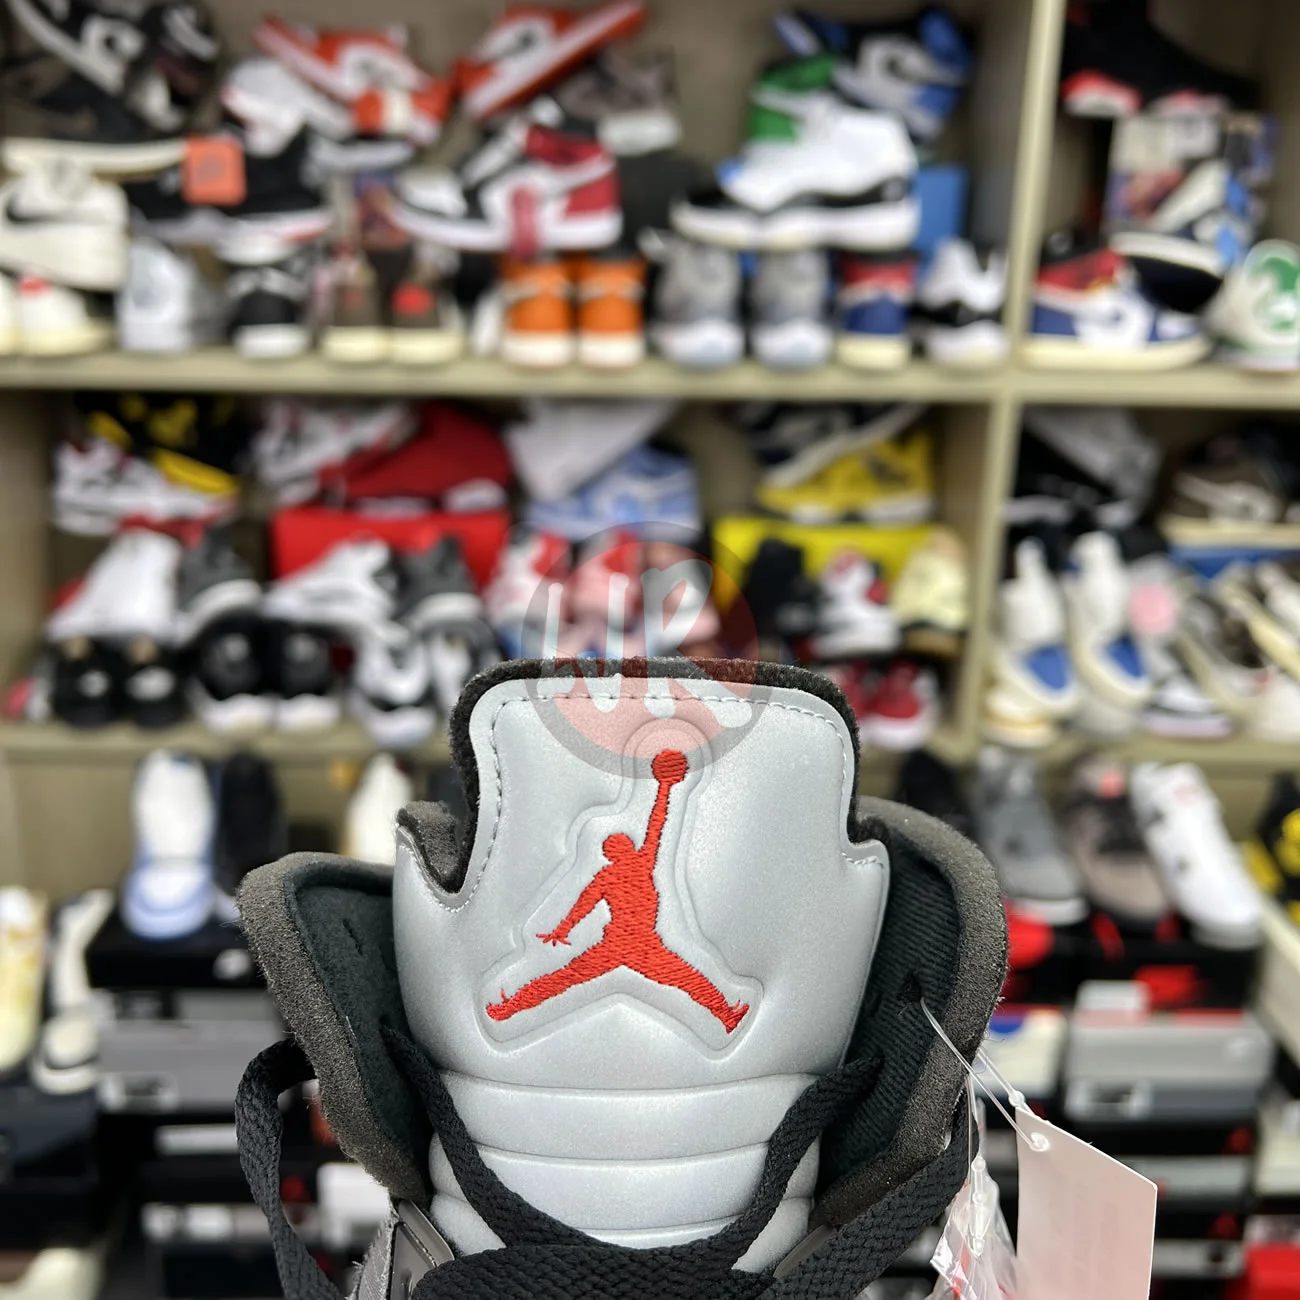 Air Jordan 5 Retro Off White Muslin Ct8480 001 Ljr Sneakers (8) - bc-ljr.net